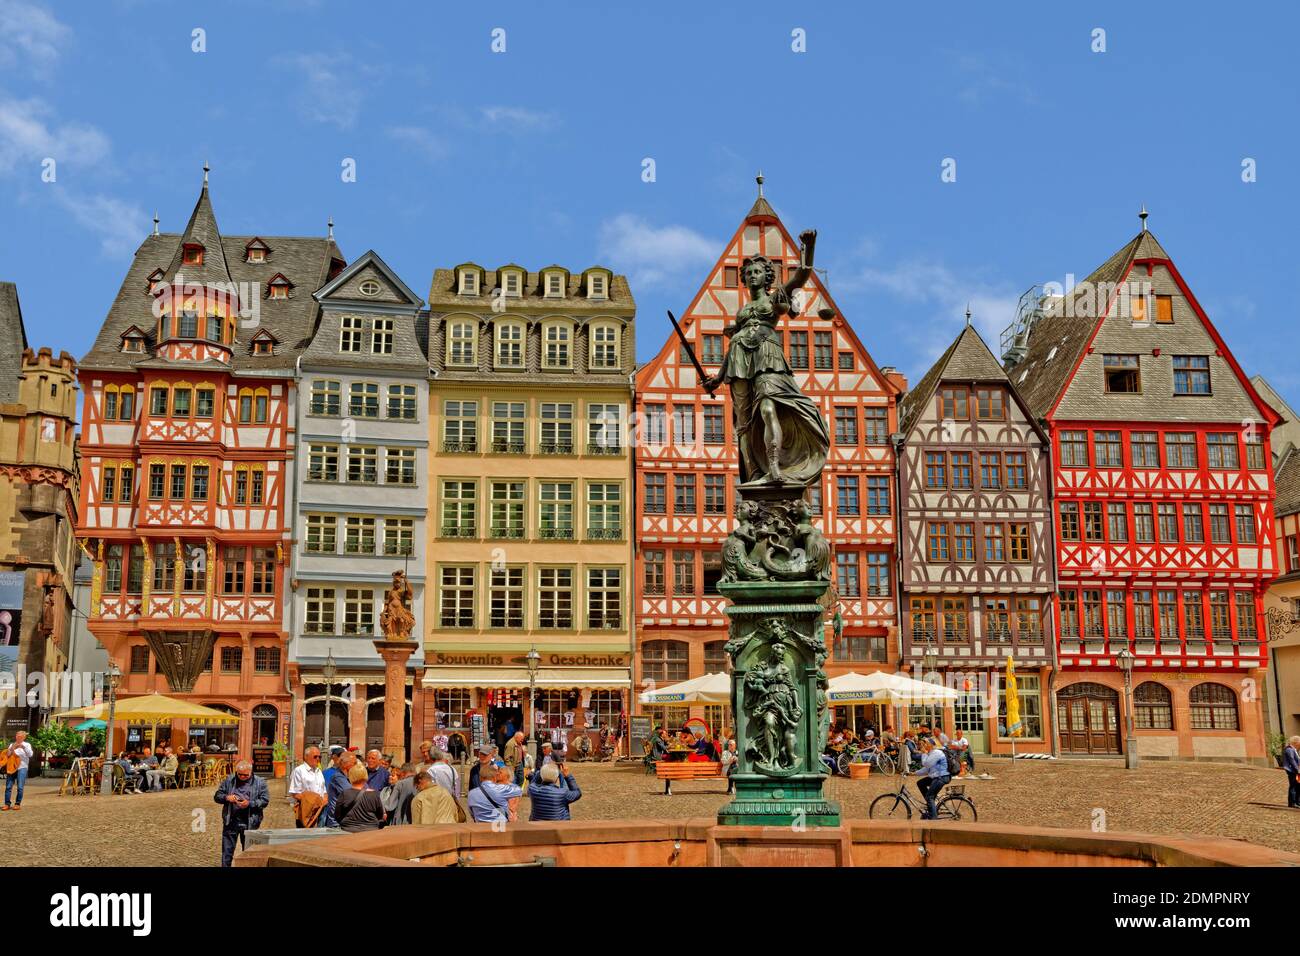 Bâtiments à colombages et statue de Lady Justice sur Römerberg dans la vieille ville de Francfort-sur-le-Main, Hesse, Allemagne. Banque D'Images